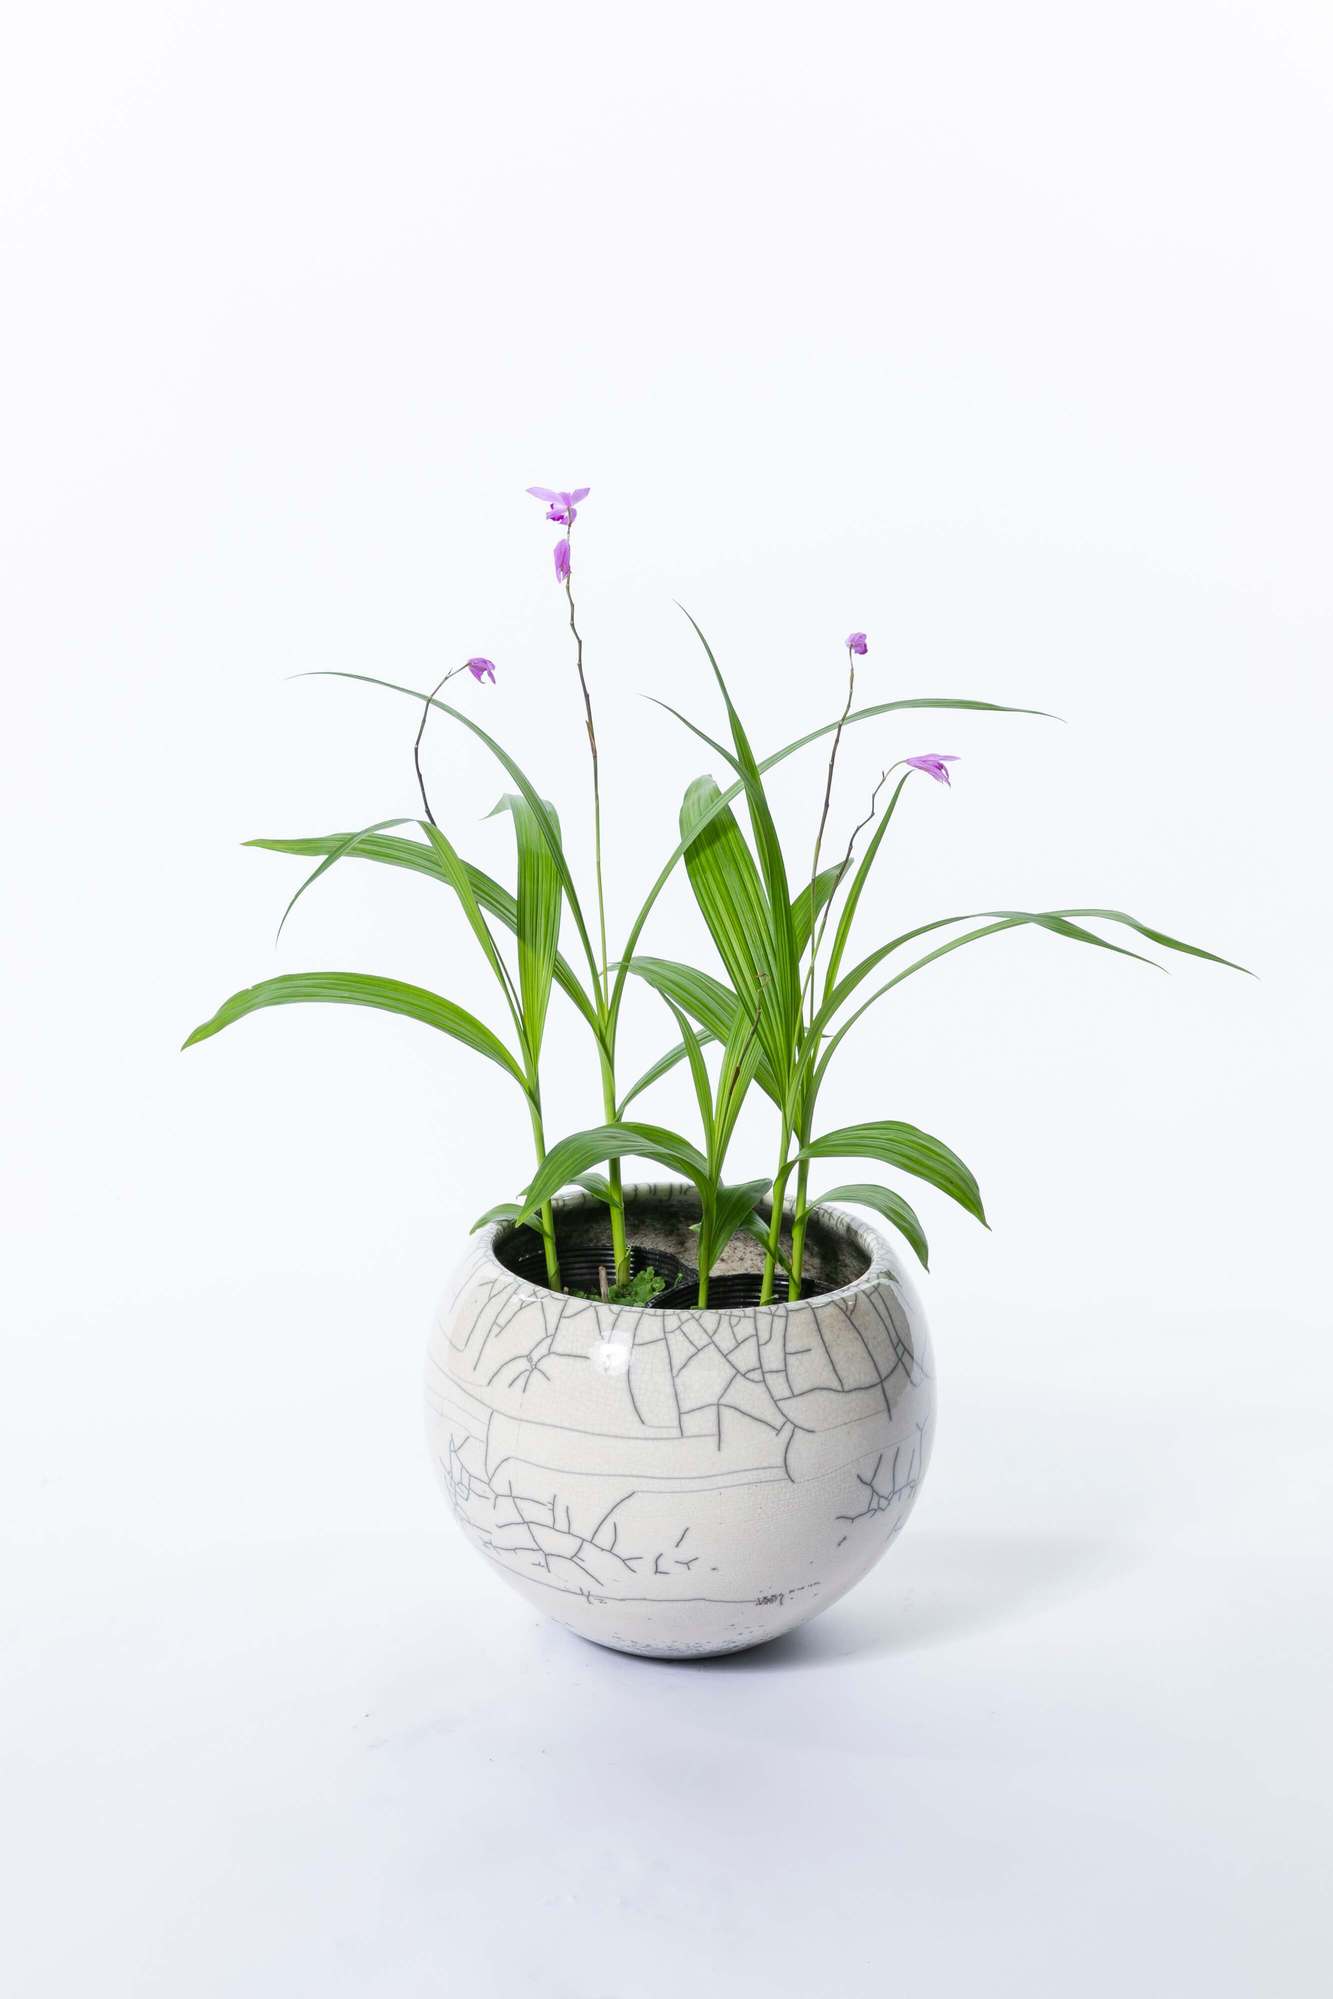 シラン 紫蘭 多年草 植栽 下草